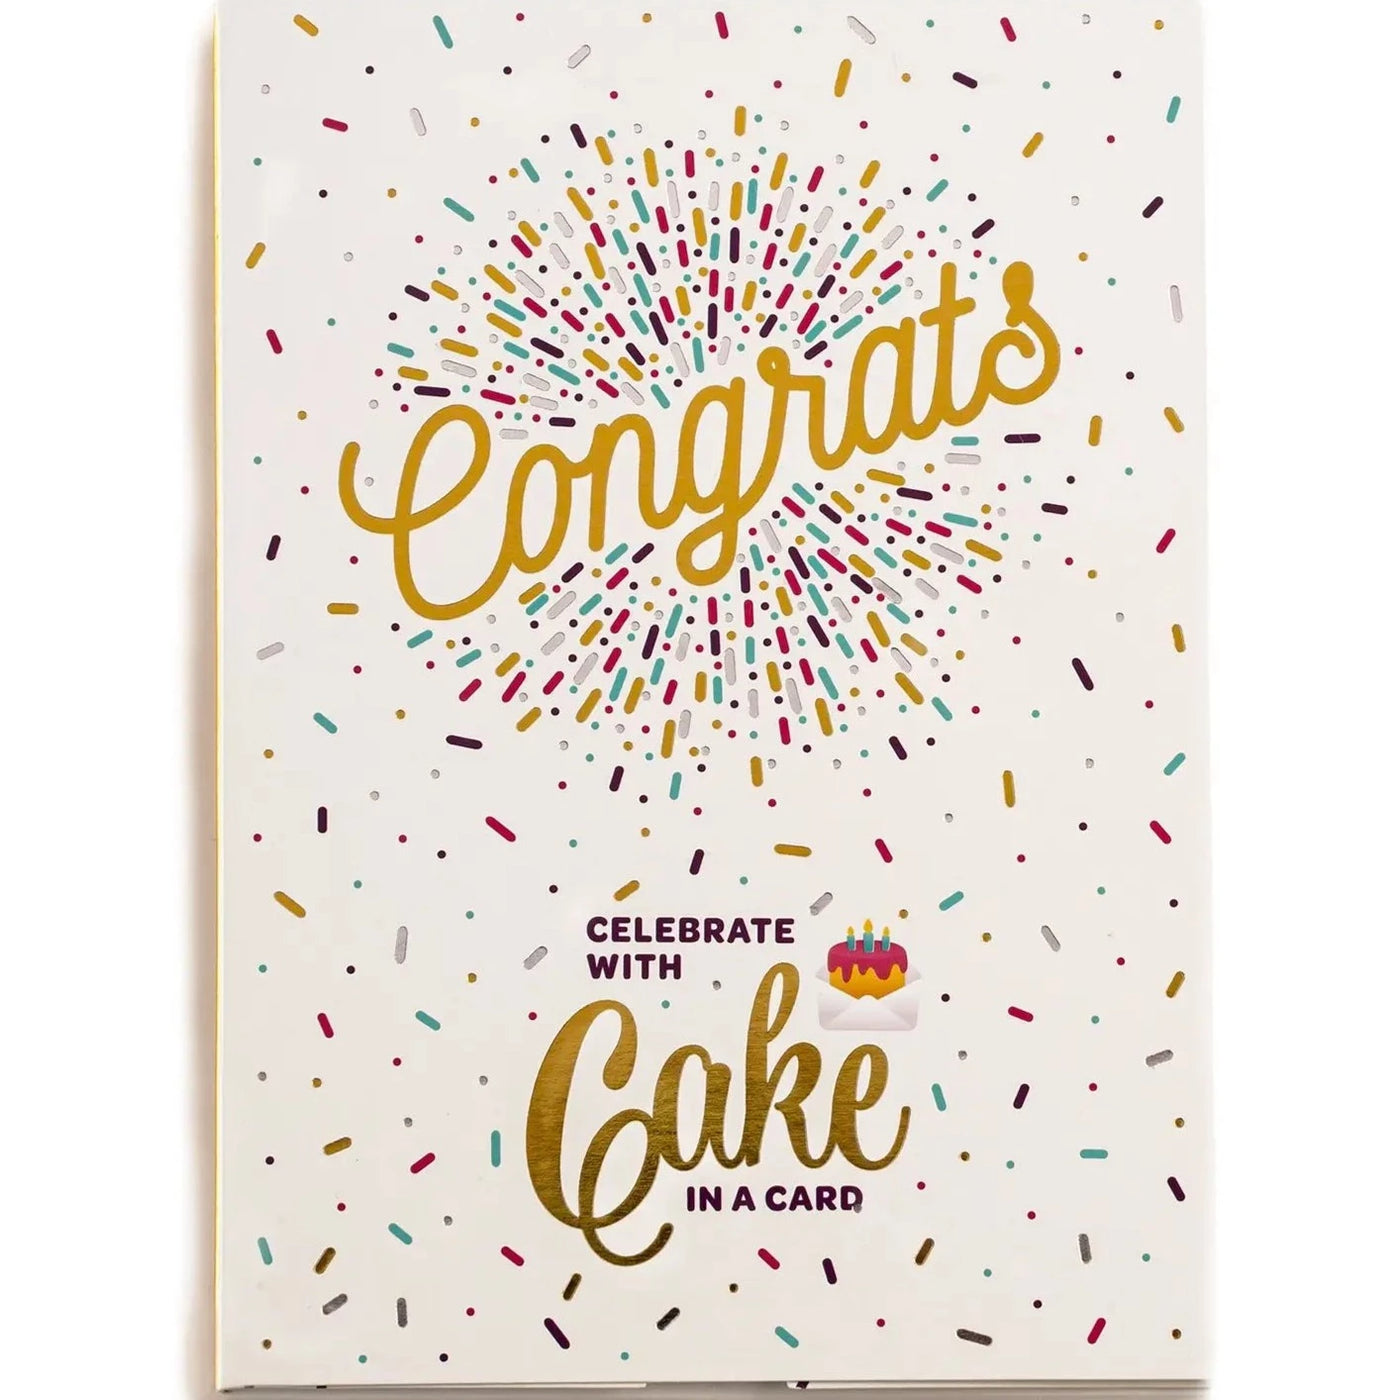 Congrats Cake Card